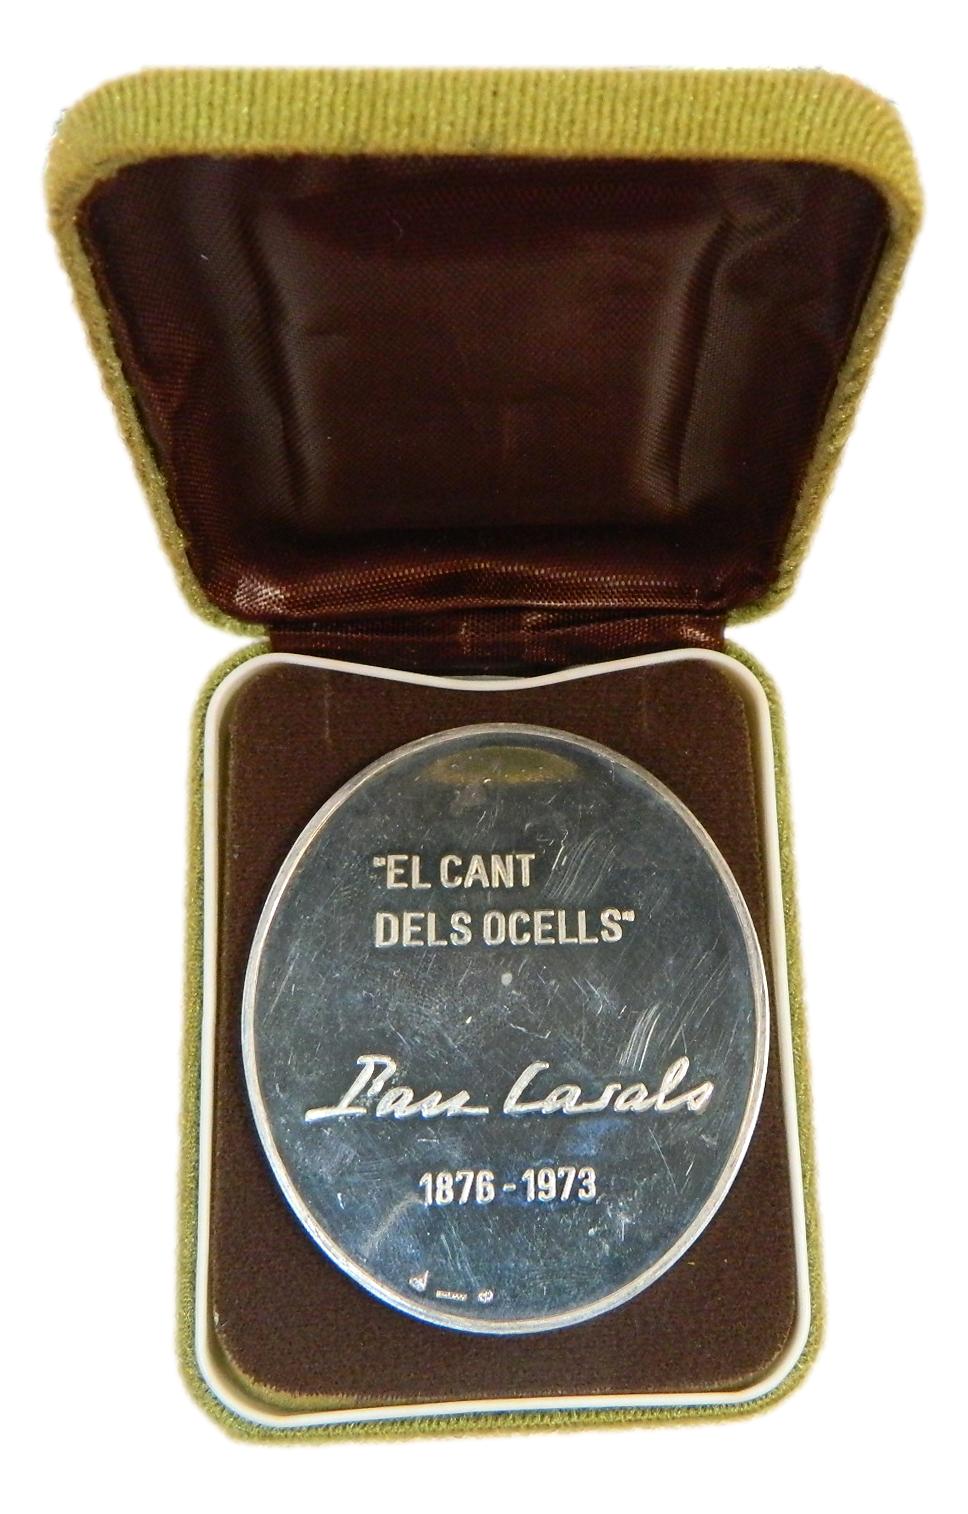 MEDALLA - PAU CASALS 1876 - 1973 - EL CANT DELS OCELLS